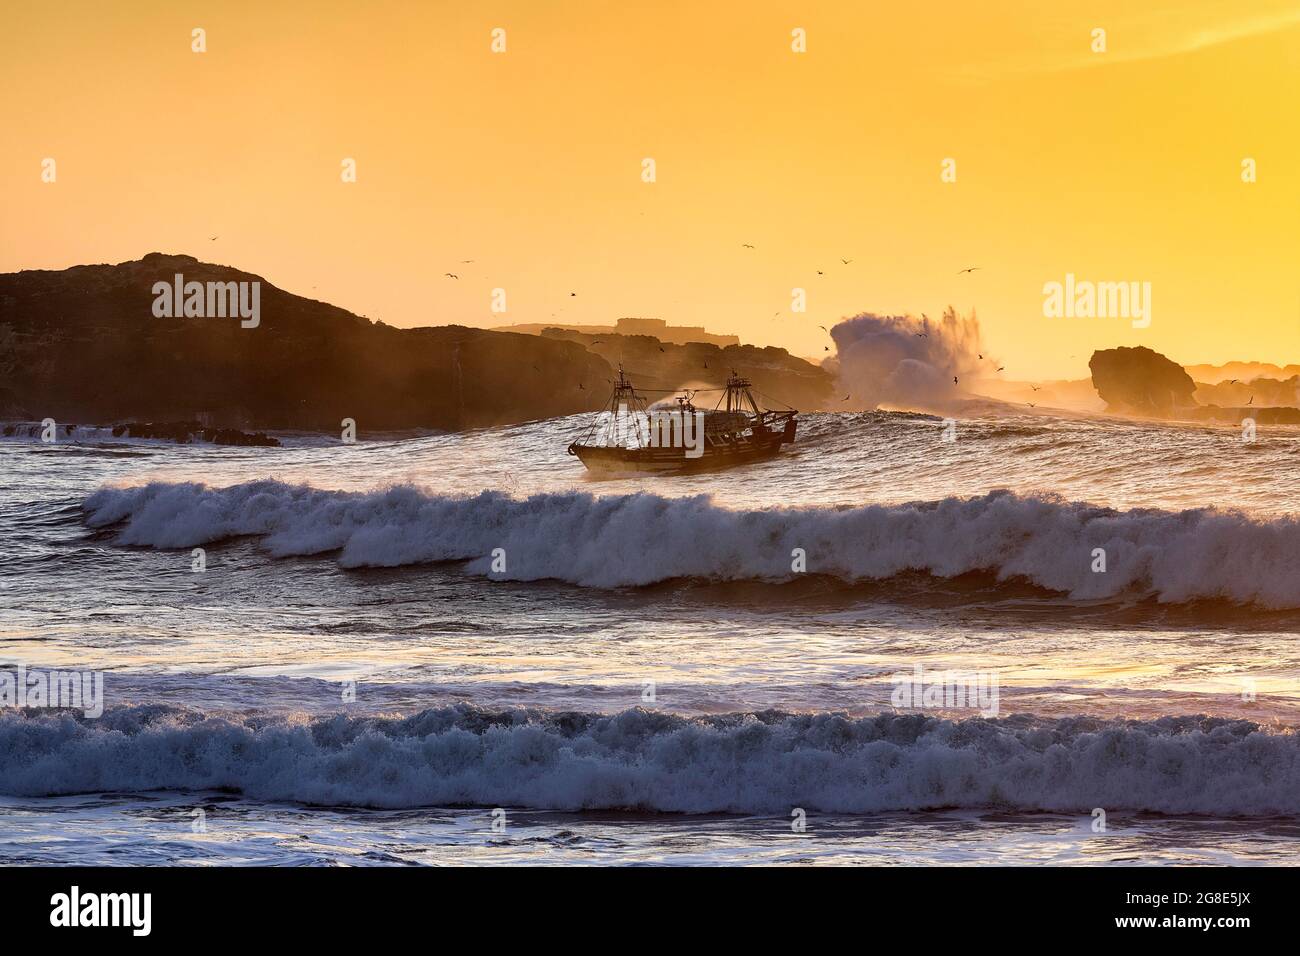 Bateau de pêche avec mouettes dans le surf, coucher de soleil sur l'île de Mogador, côte Atlantique, Essaouira, Marrakech-Safi, Maroc Banque D'Images